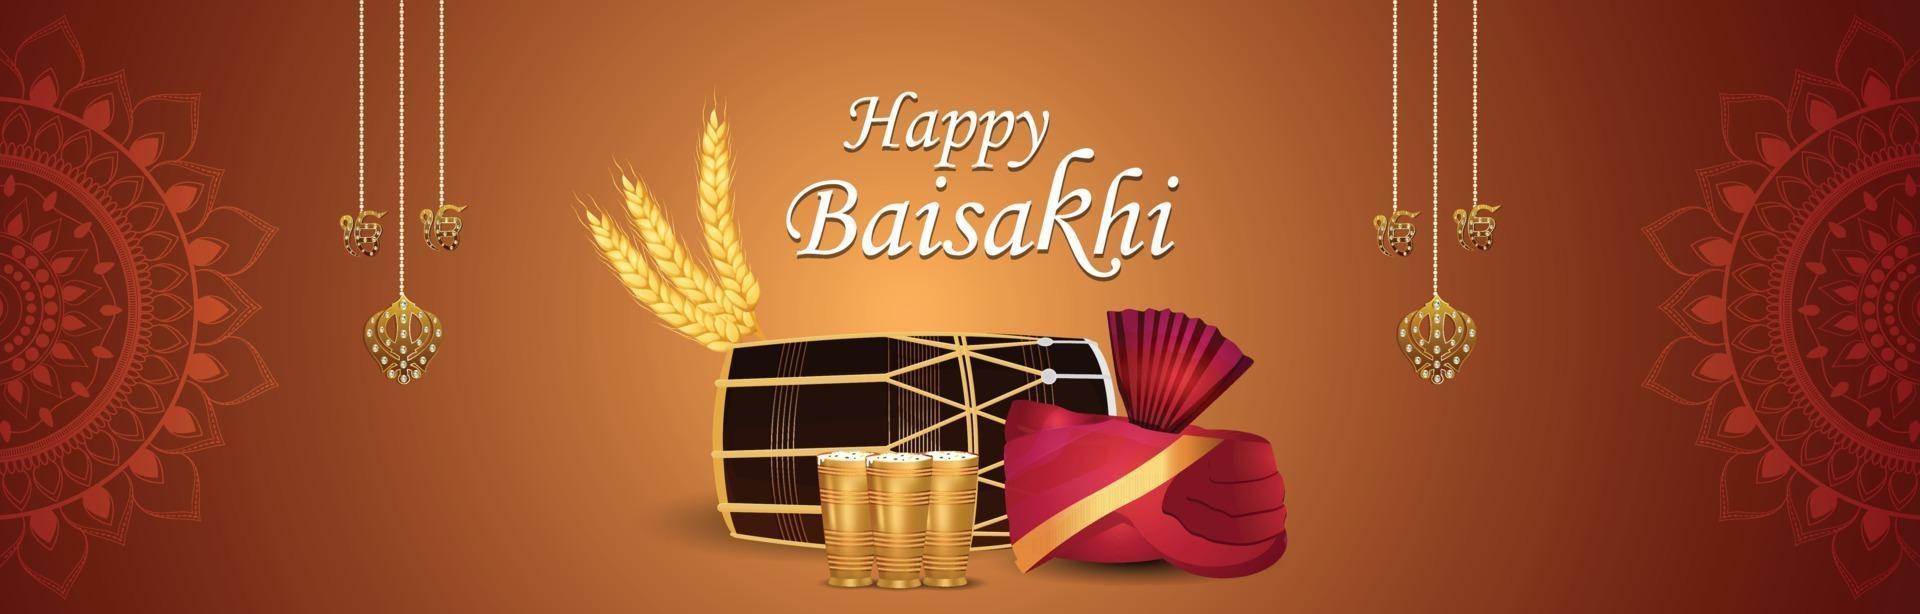 Happy vaisakhi punjabi festival celebration banner vector